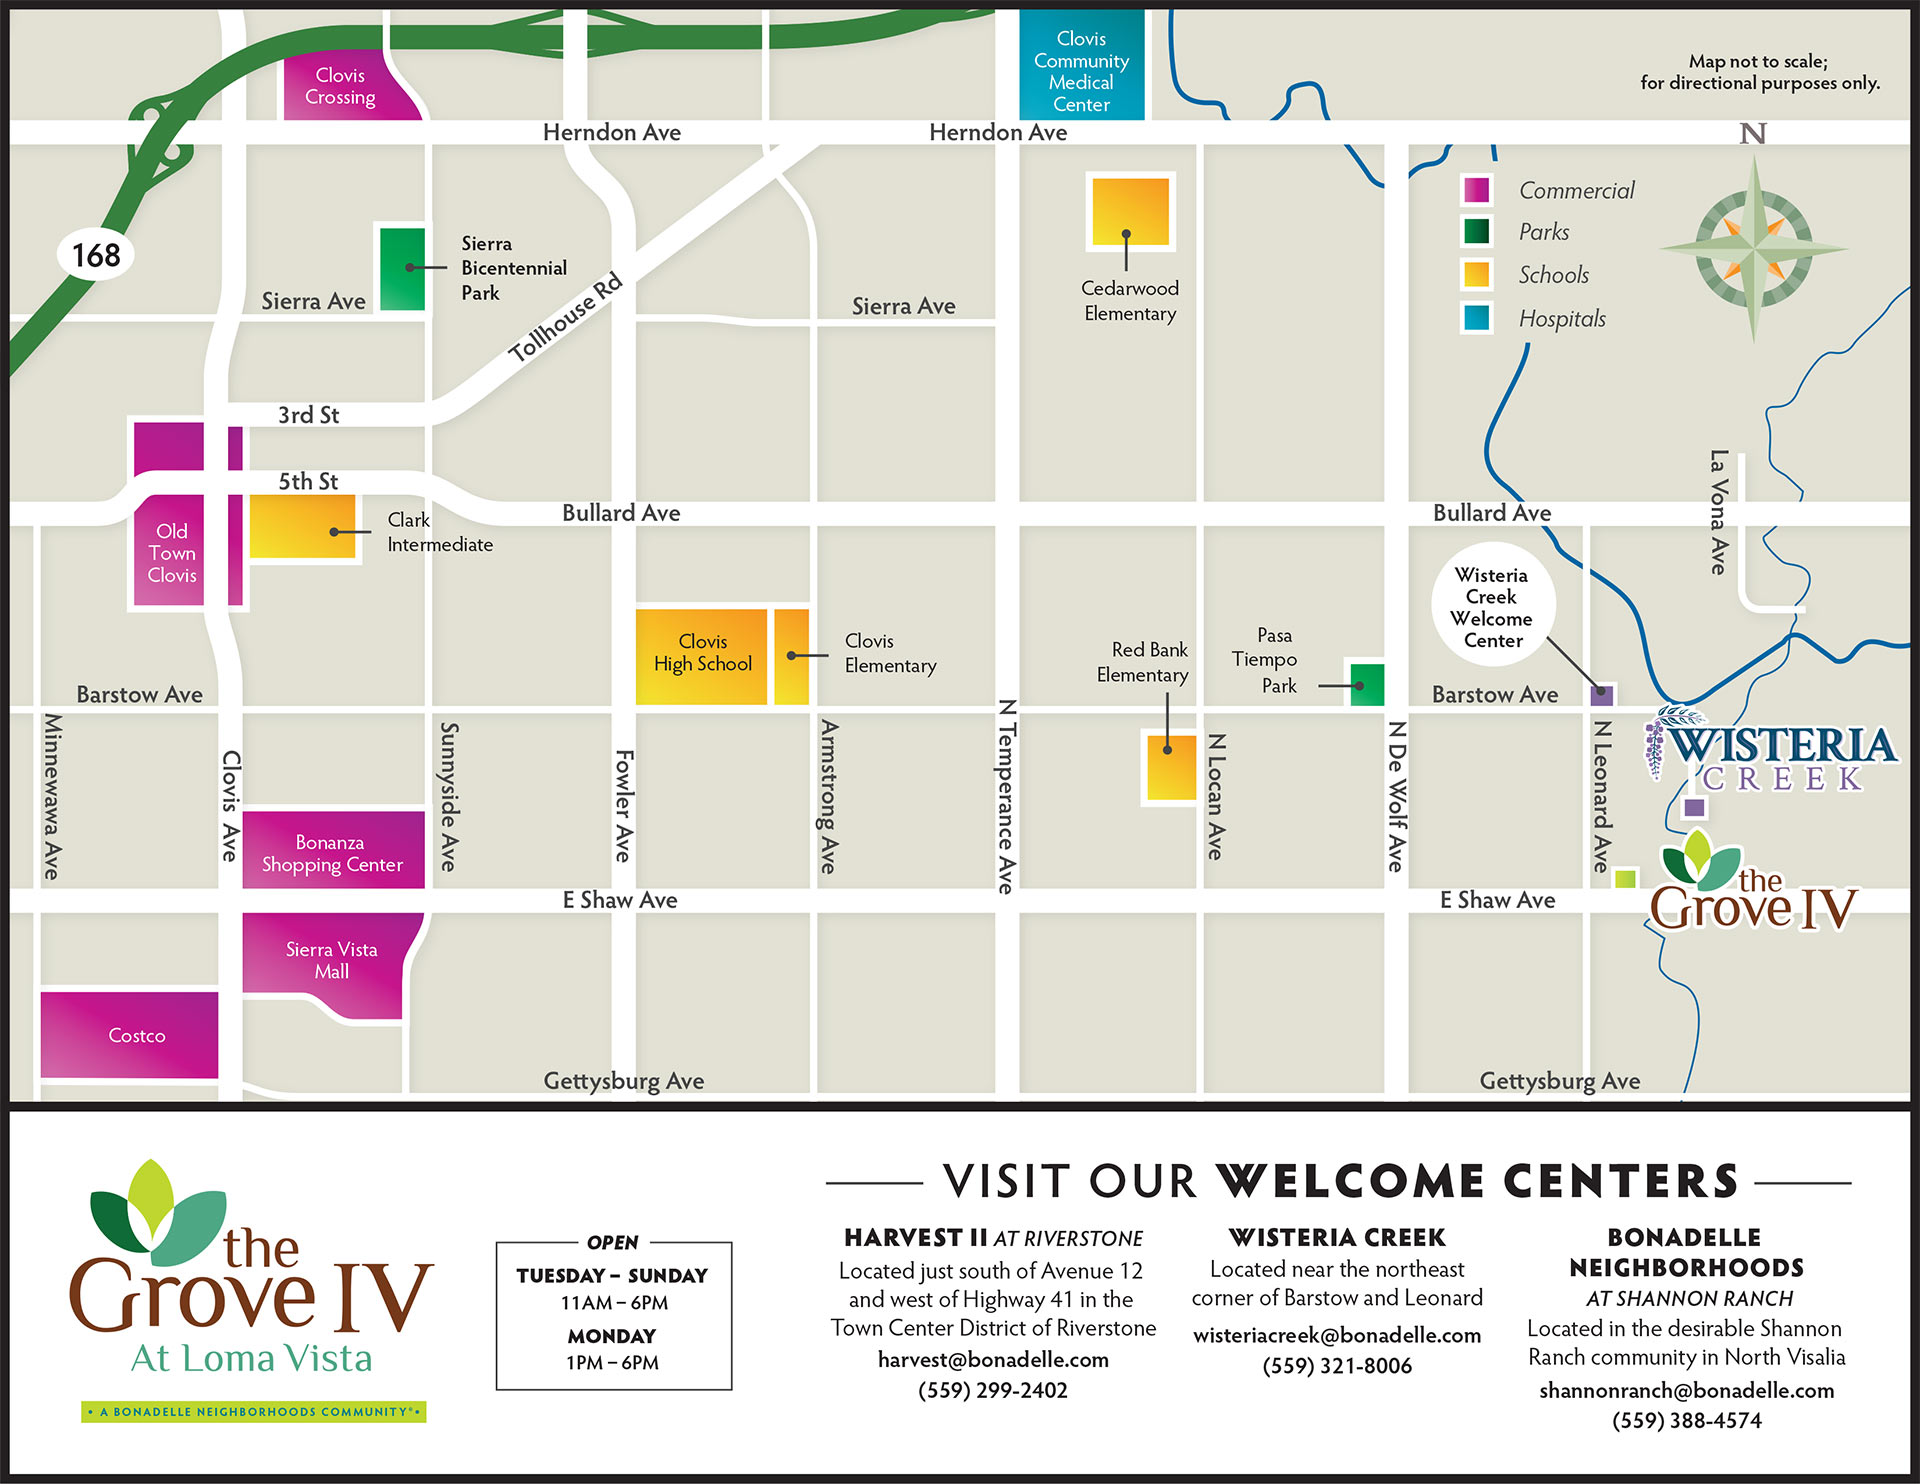 The Grove IV at Loma Vista Area Map